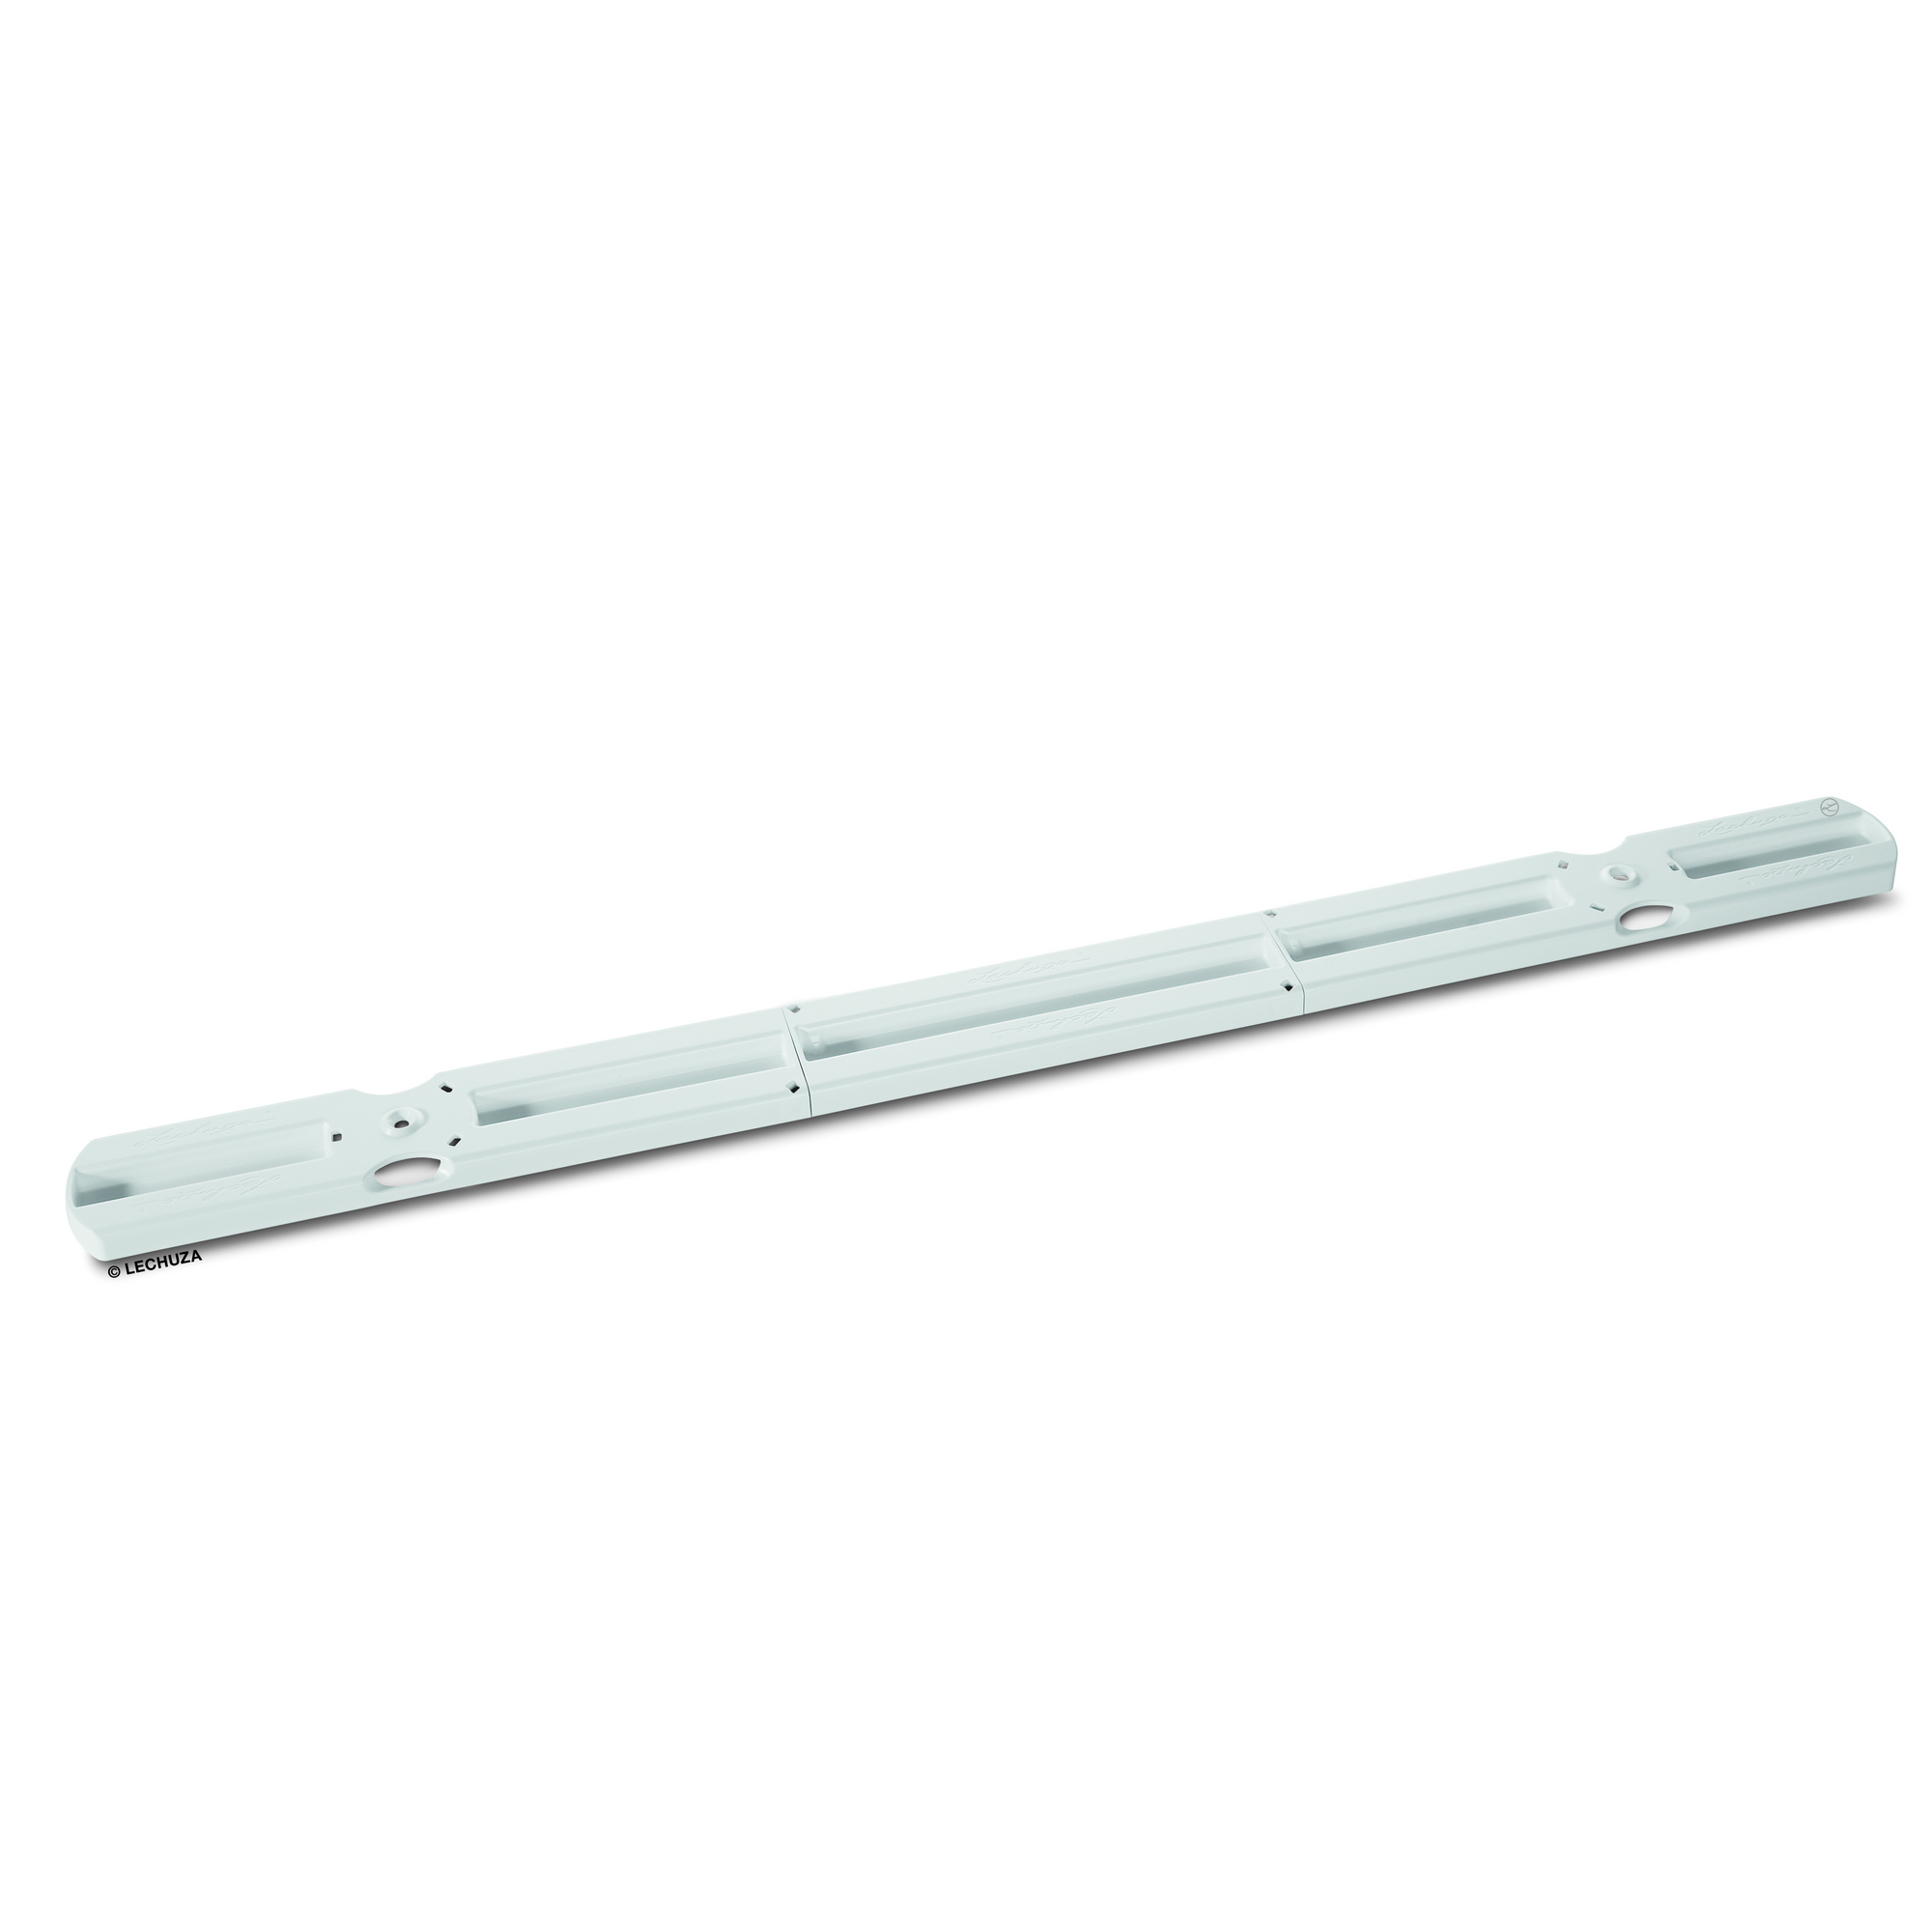 Balkonkastenhalter-Ergänzung Kunststoff weiß 30 x 6 x 5 cm + product picture